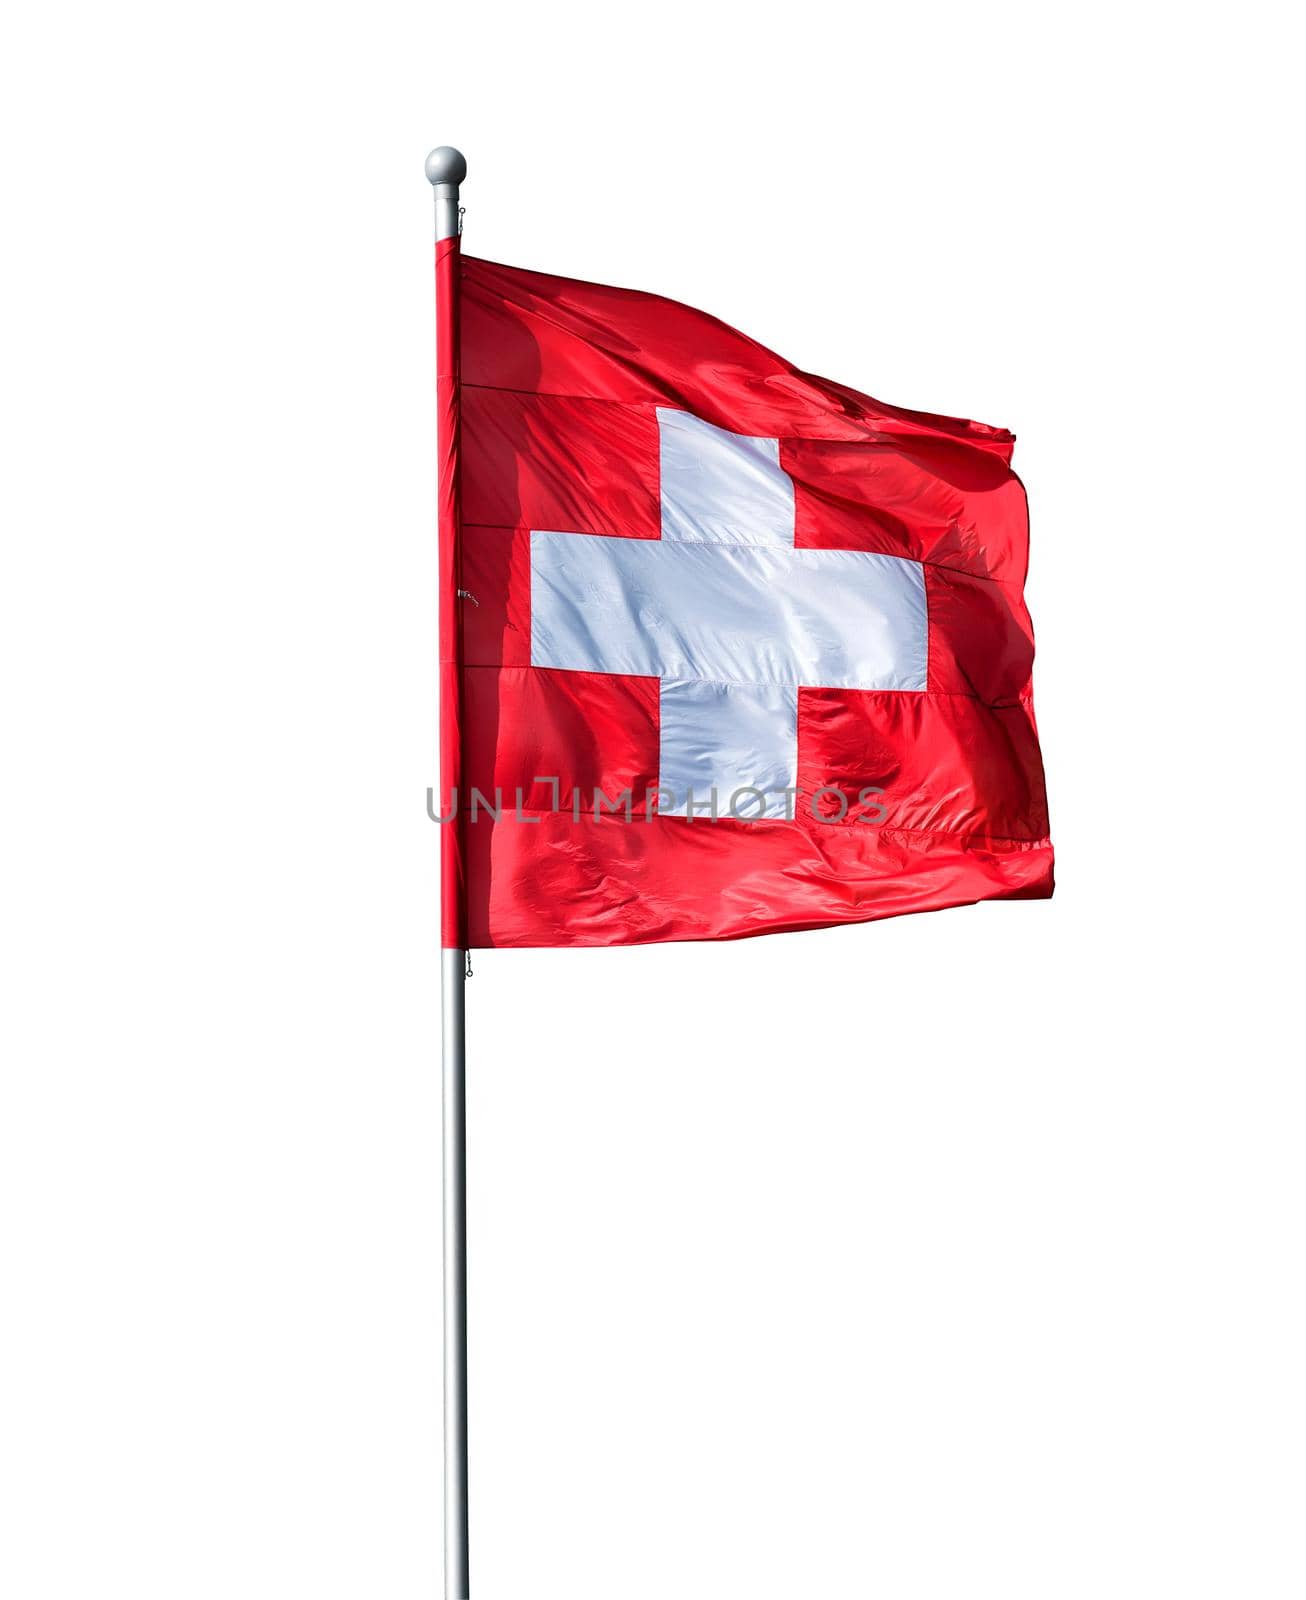 Swiss flag by GekaSkr